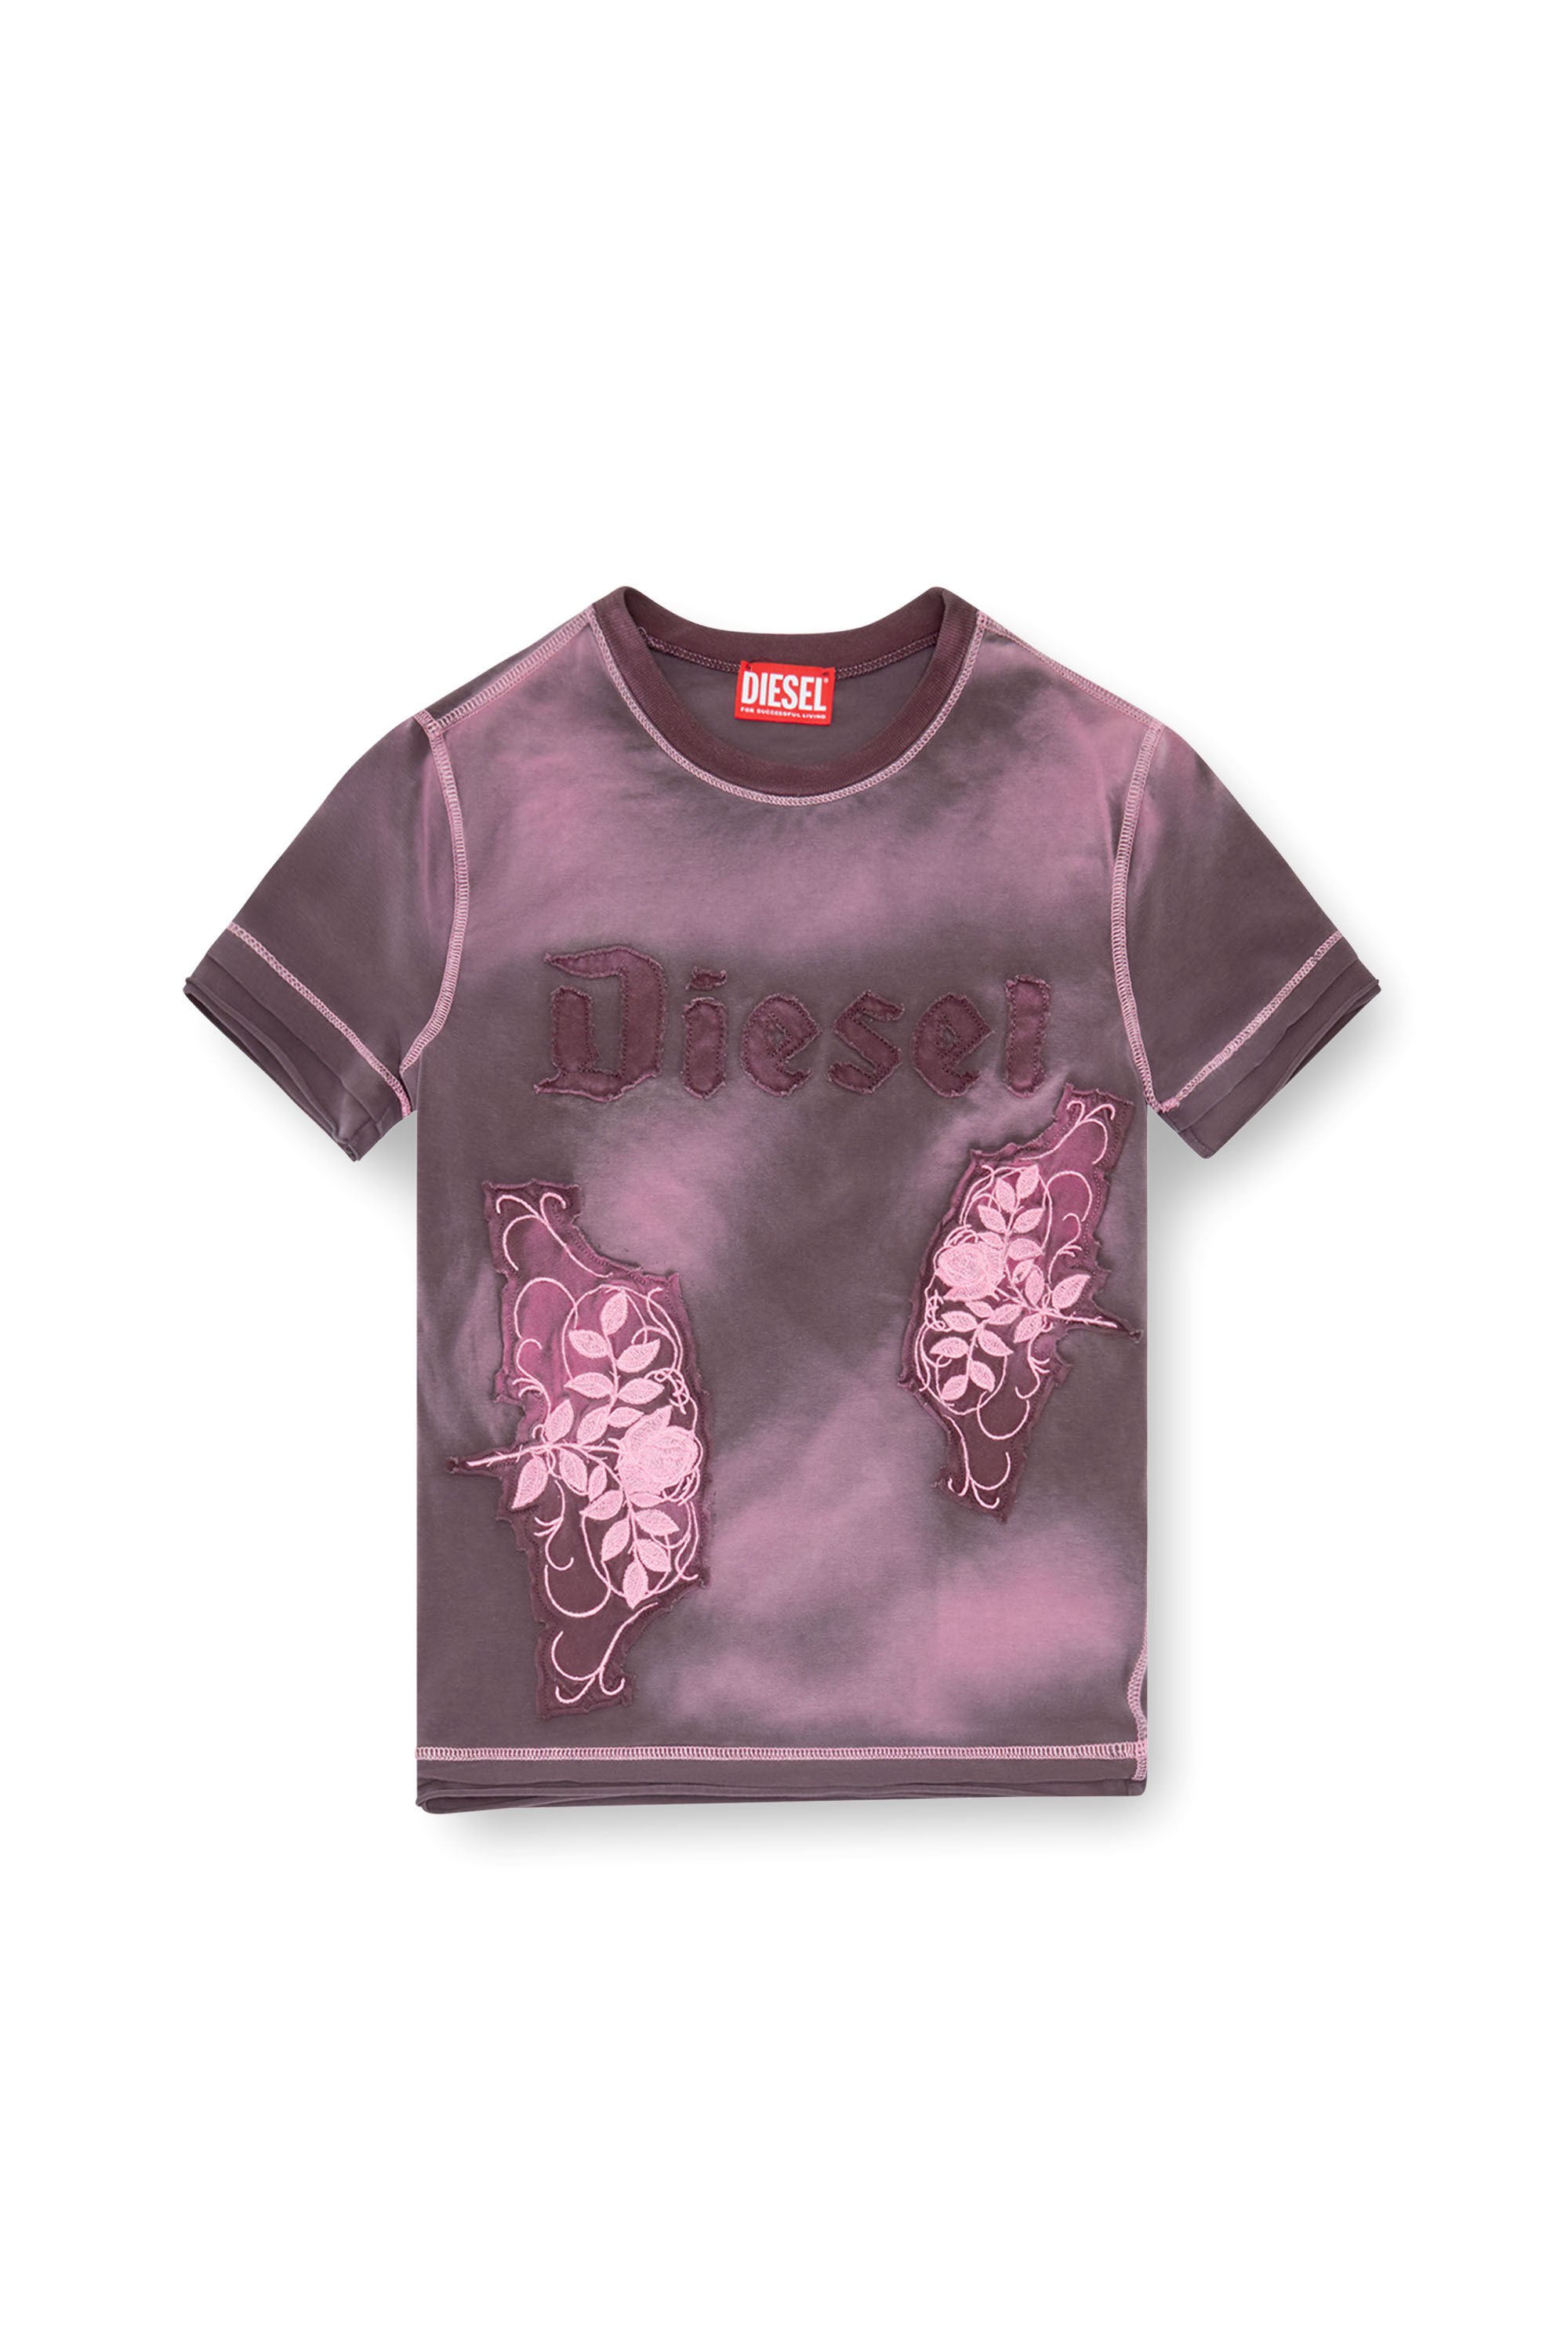 Diesel - T-UNCUT, Femme T-shirt avec empiècements fleuris brodés in Violet - Image 2